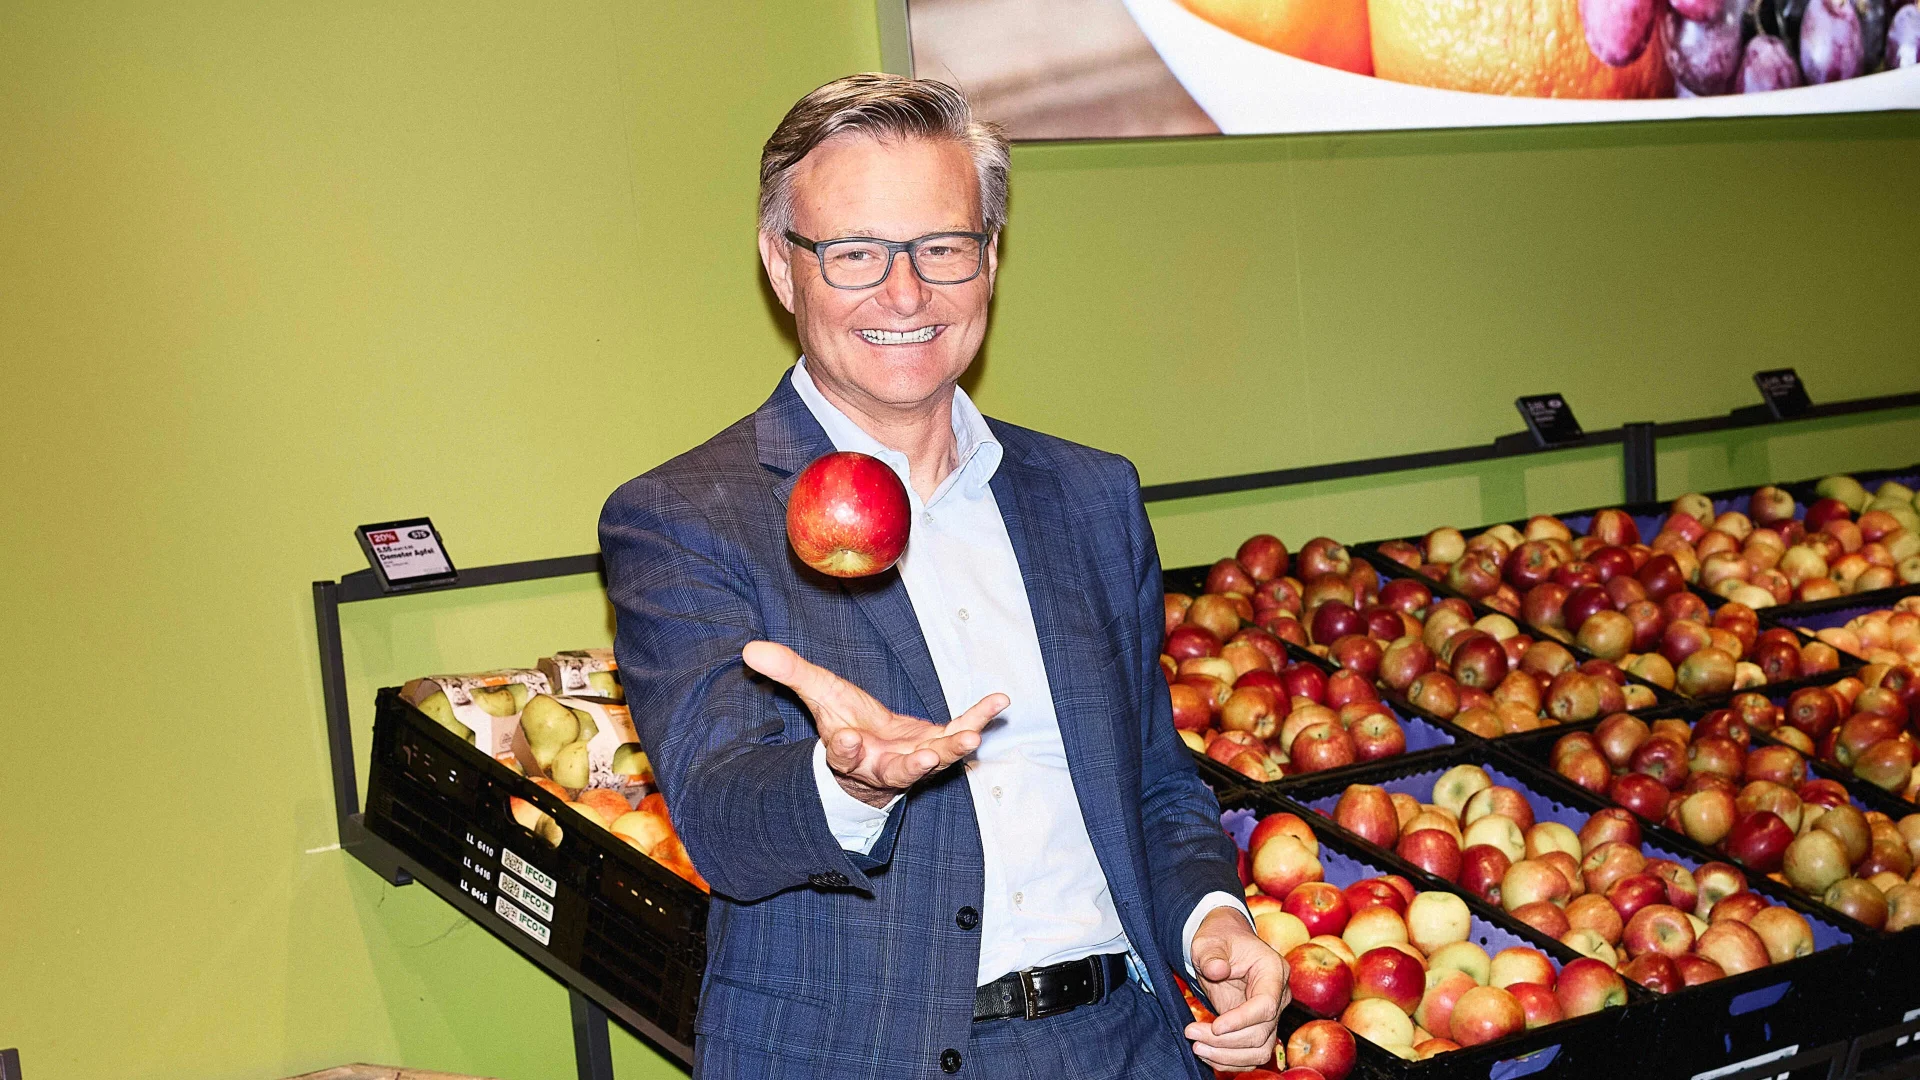 Mario Irminger au supermarché devant l'étalage de pommes